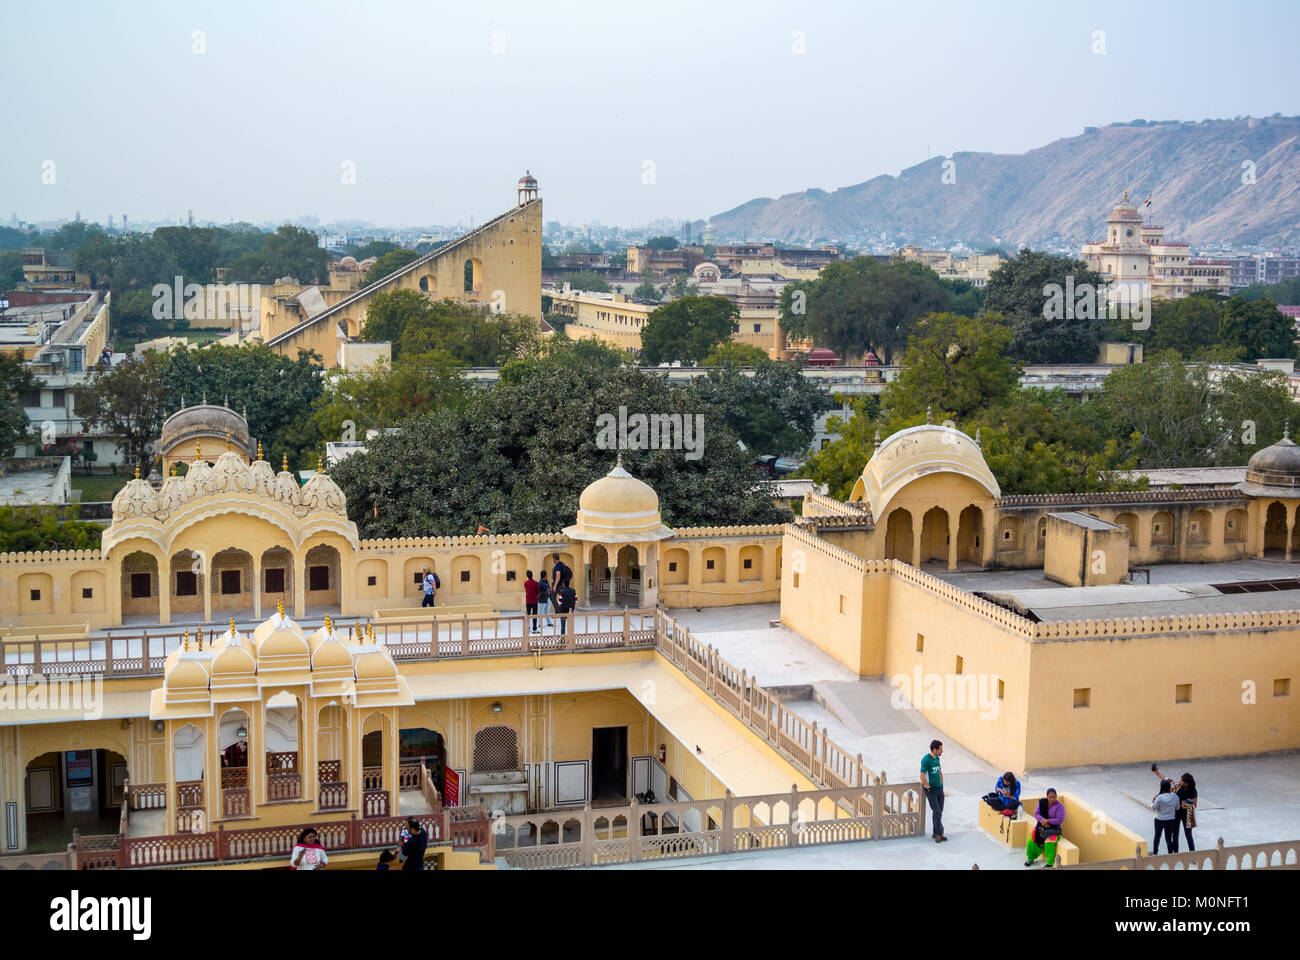 Jaipur, Rajasthan, Inde, 25th de janvier 2017: Une vue aérienne de la ville de Jaipur vue de Jantar mantar Banque D'Images